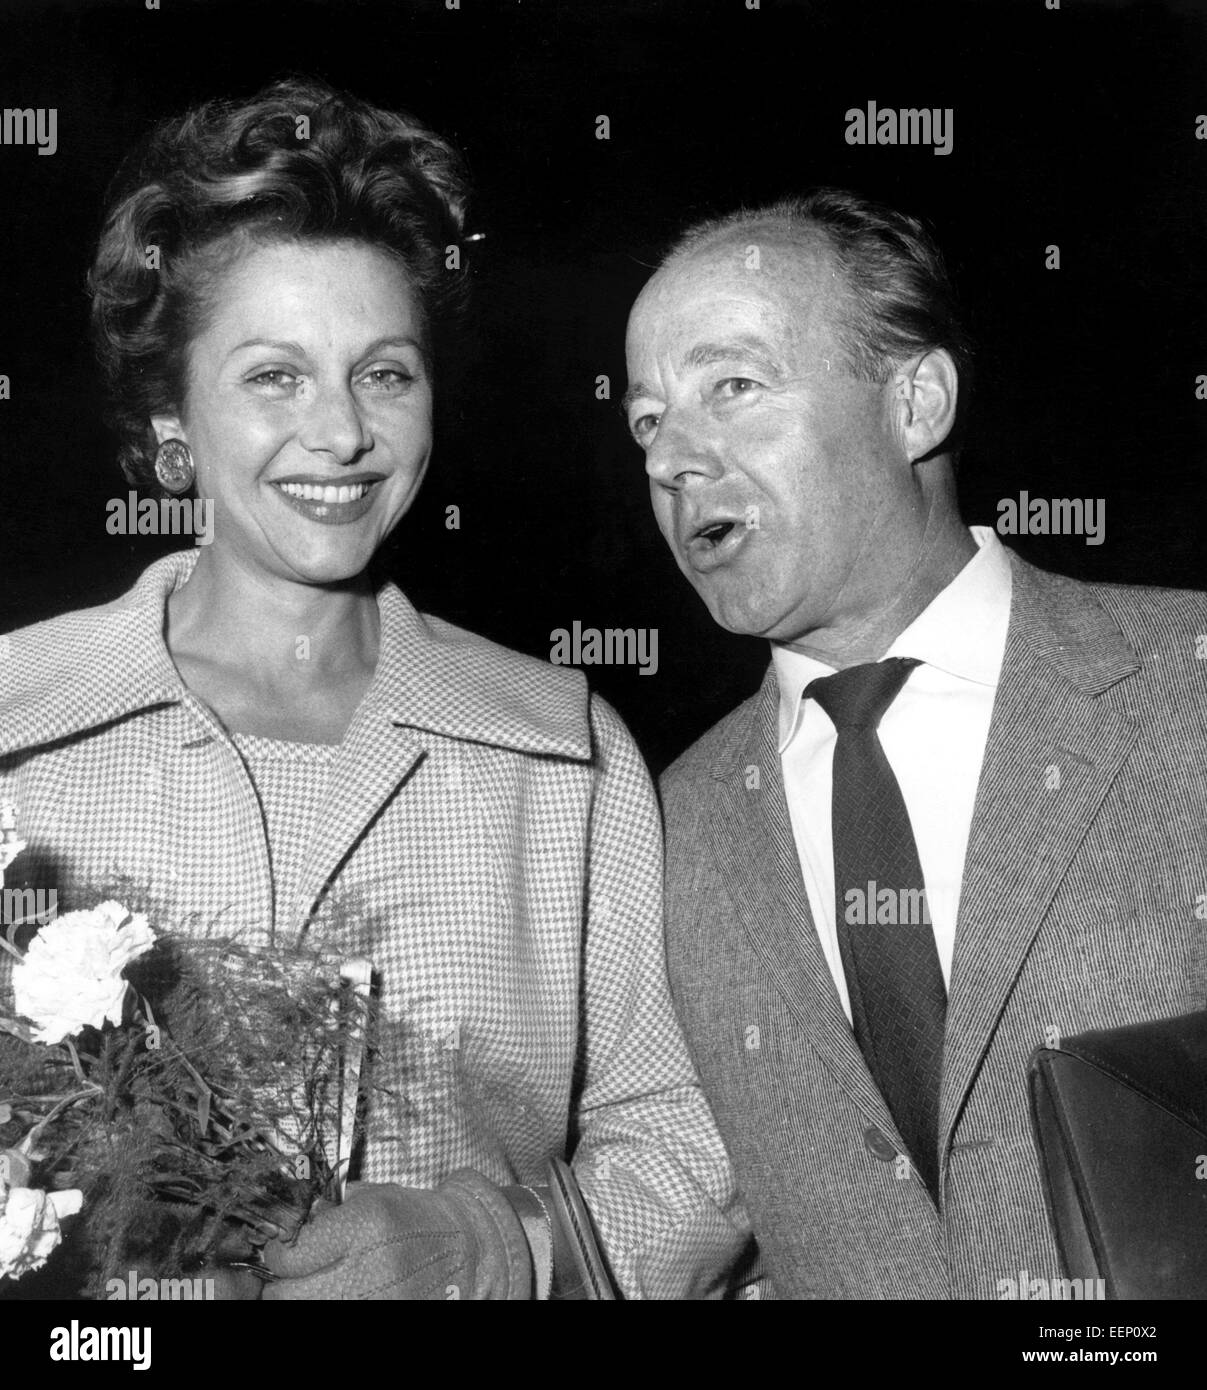 Attore giovane Heinz Rühmann e Hertha Feiler arriva per il Berlinale sull'aeroporto di Tempelhof il 4 di luglio nel 1958. Il giovane è stato sposato da 1939 a Hertha Feiler la sua morte nel 1970. Foto Stock